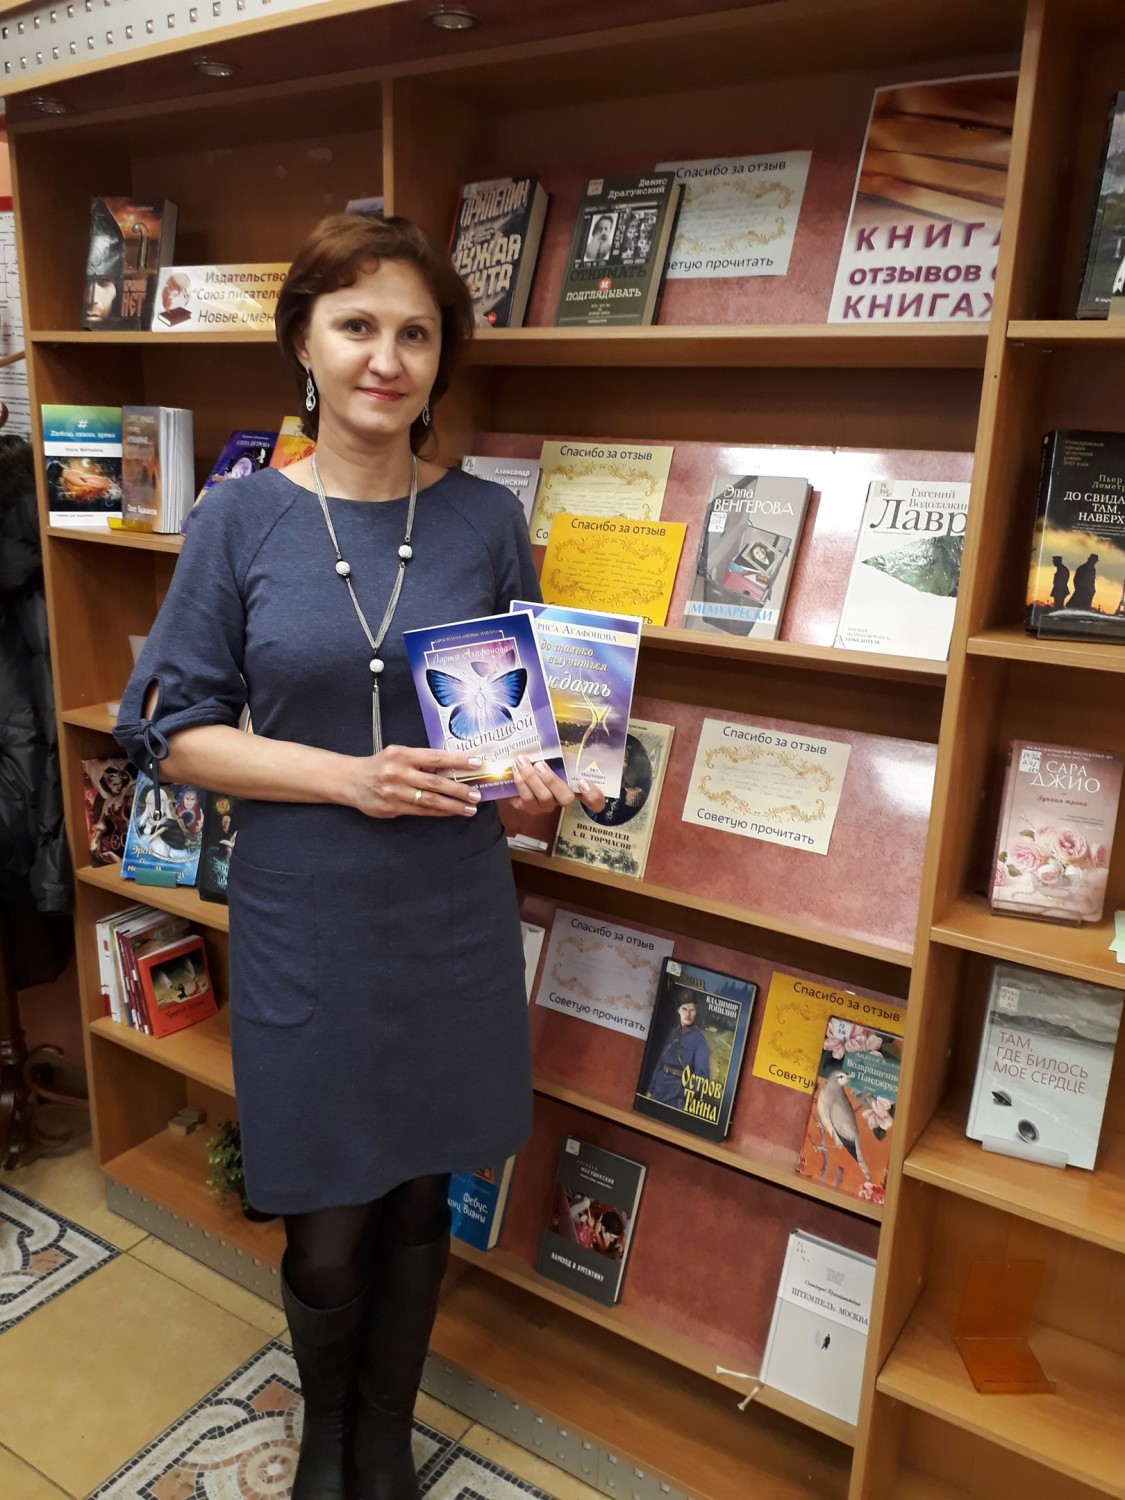 Интервью с писательницей Ларисой Агафоновой